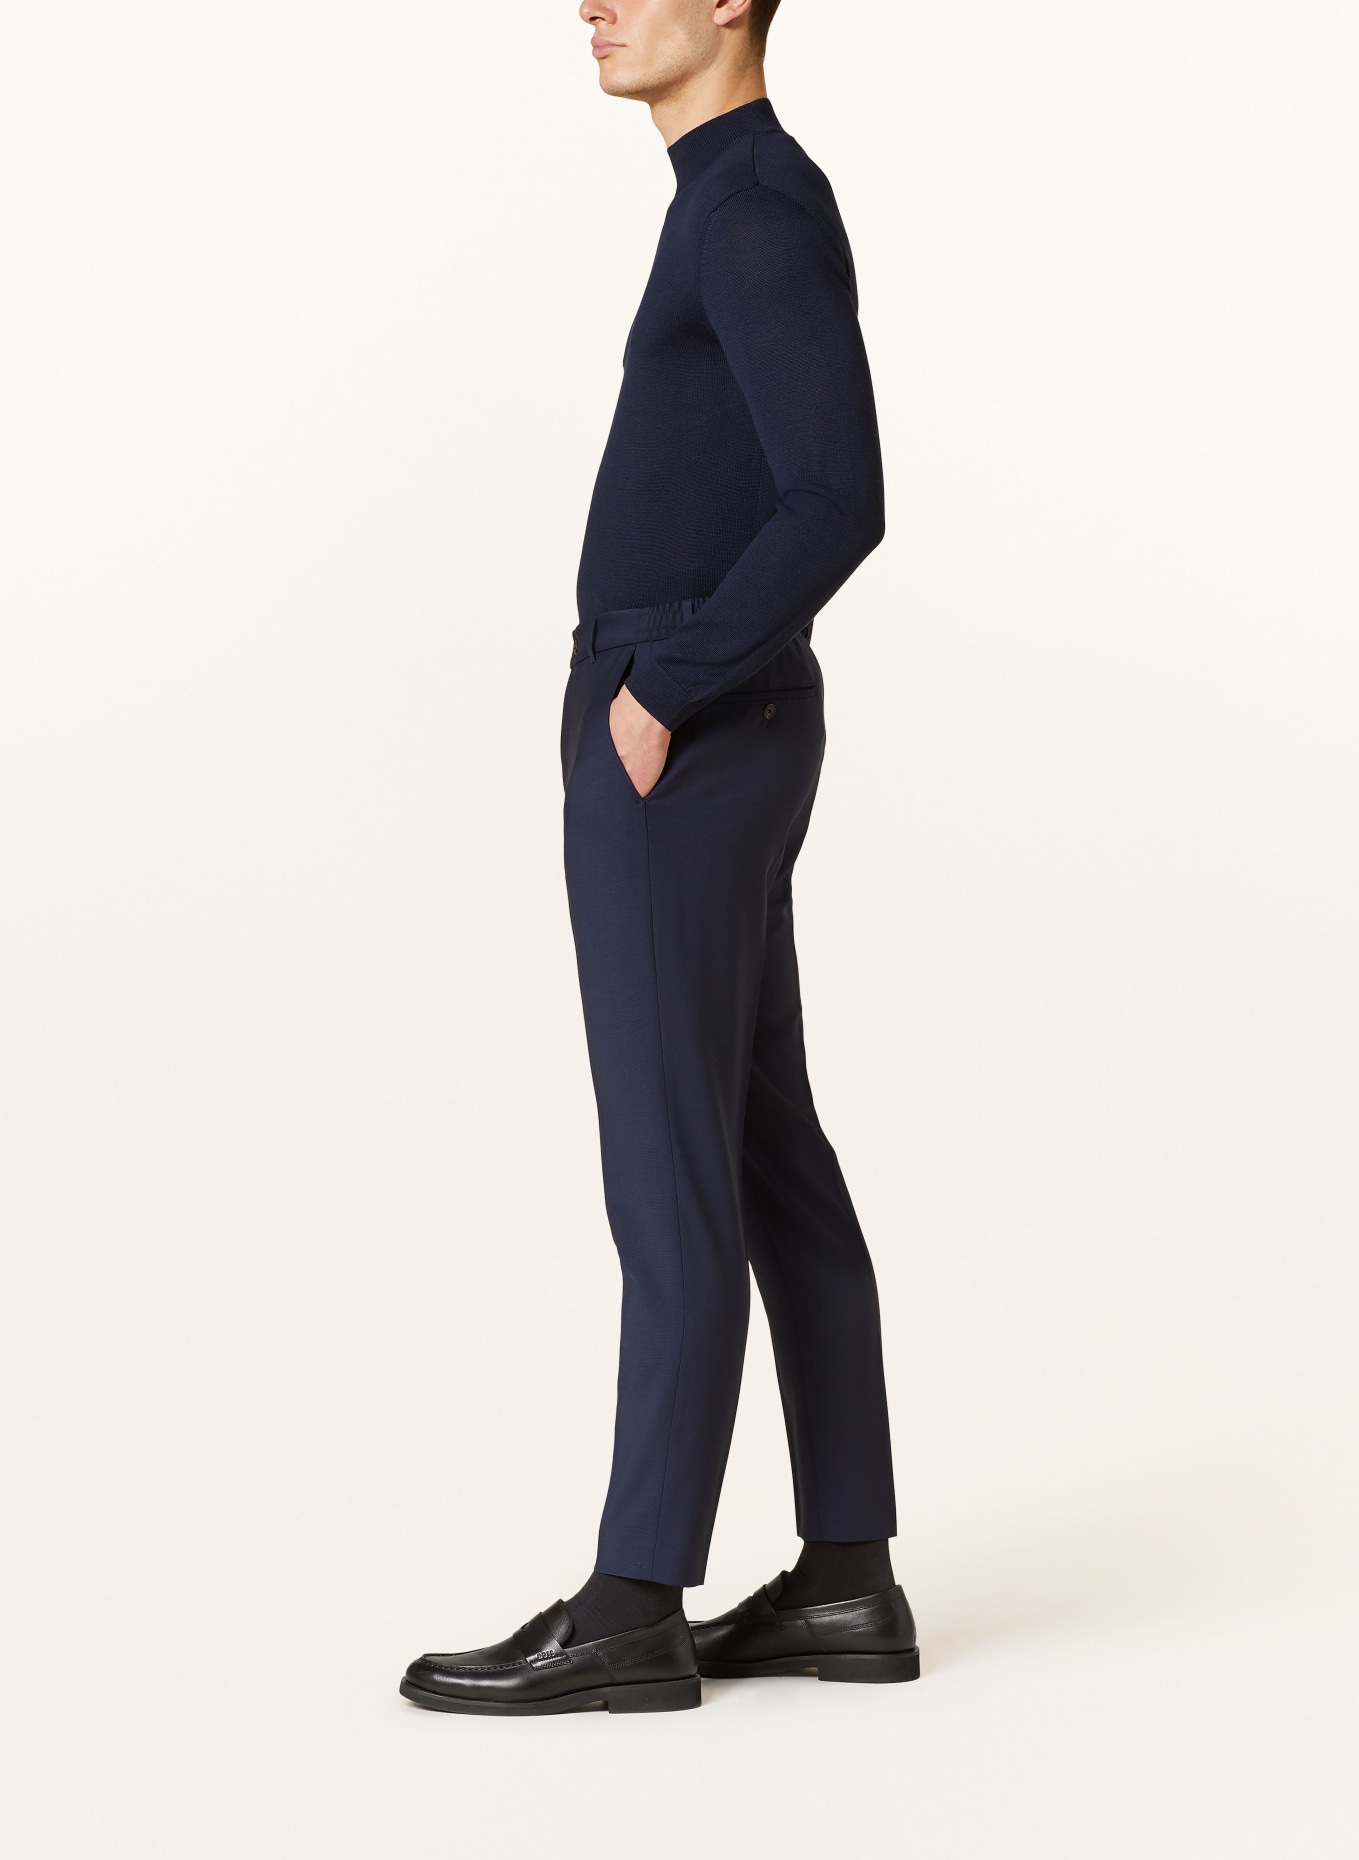 JOOP! Suit trousers BAXX slim fit, Color: 401 Dark Blue                  401 (Image 5)